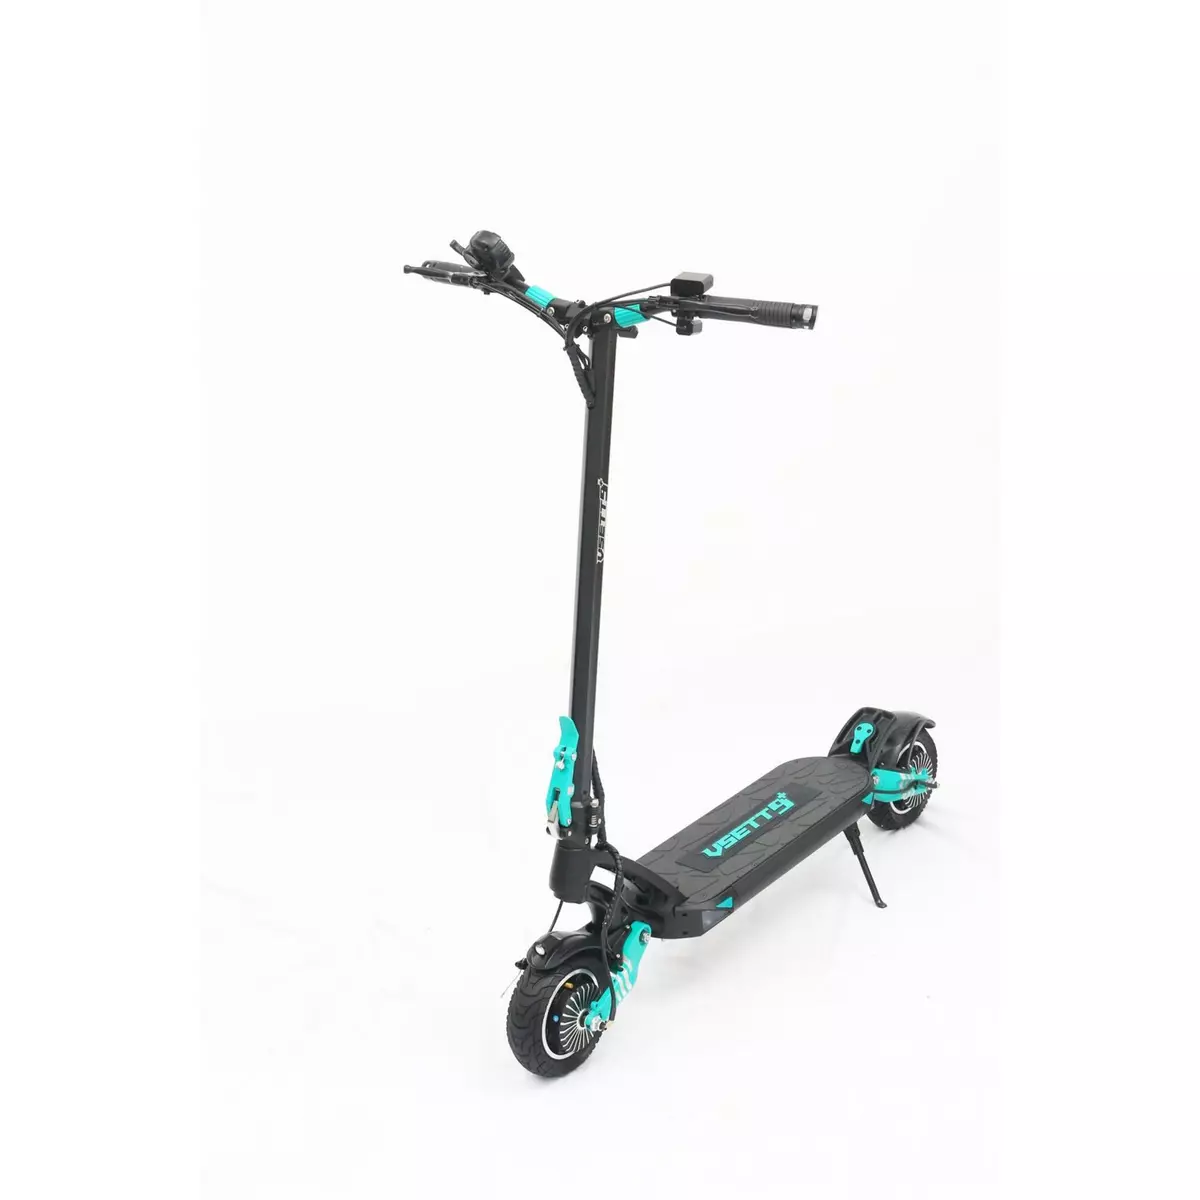 Promo Trottinette électrique Urbanglide Ride 100xs chez Auchan